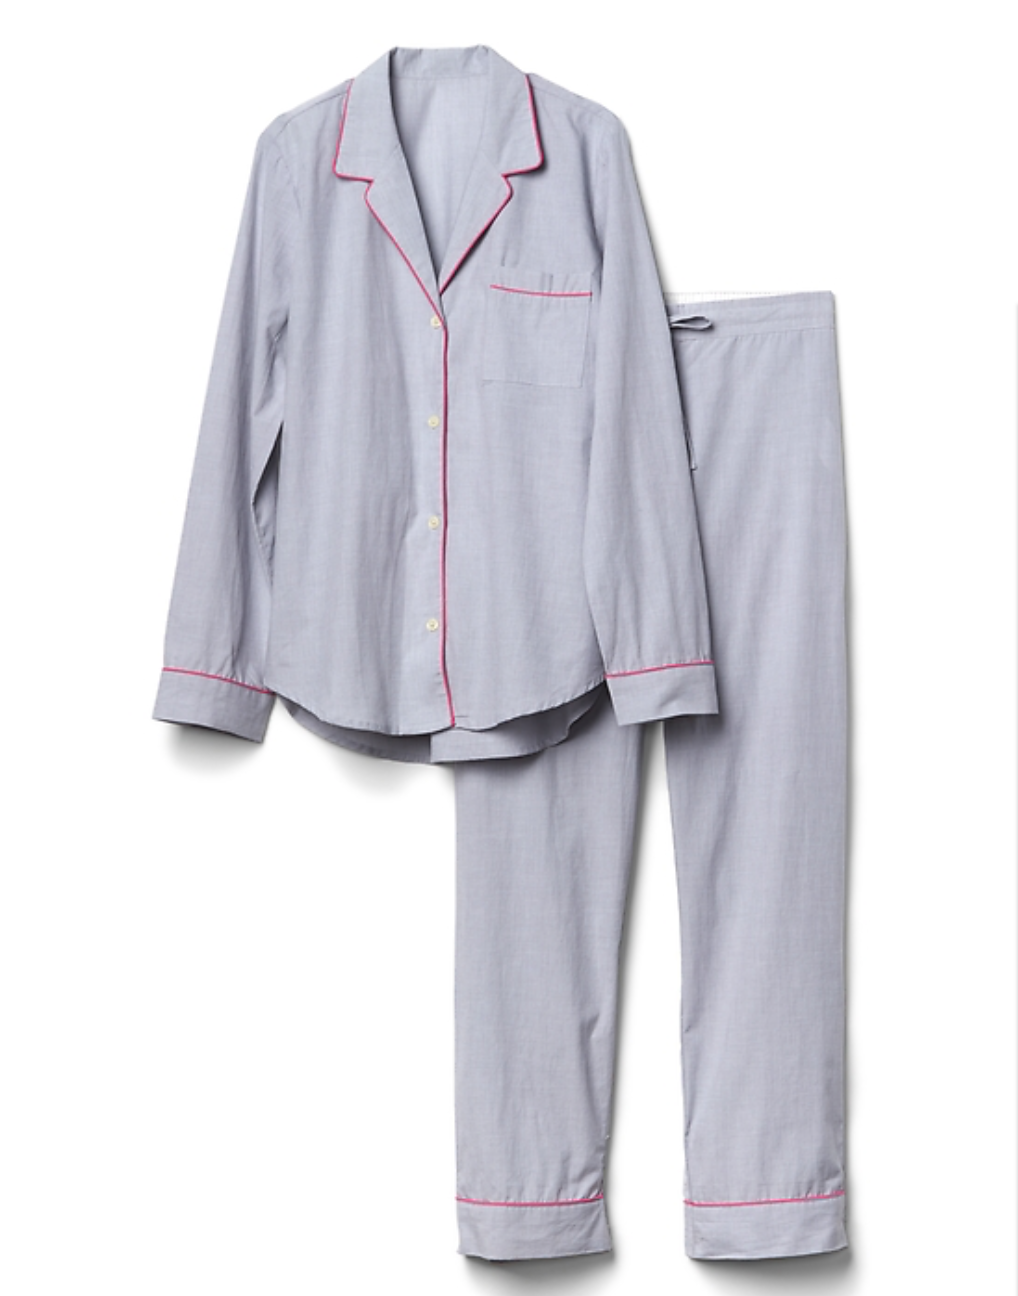 Gap Breast Cancer Awareness 2017 pajamas